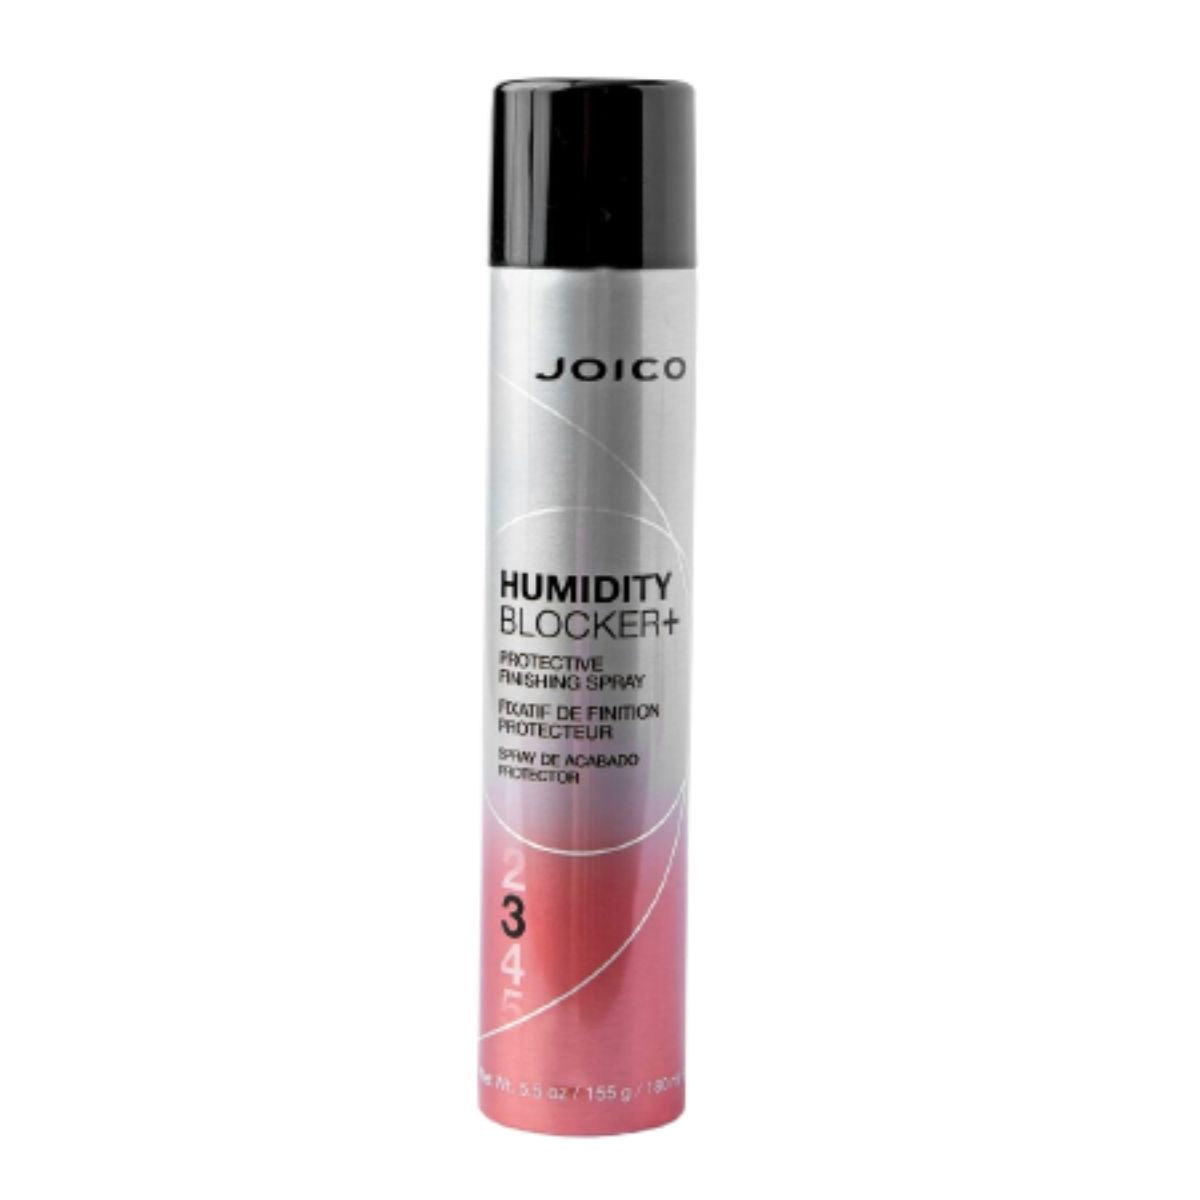 Joico Humidity Blocker Finishing Spray 3